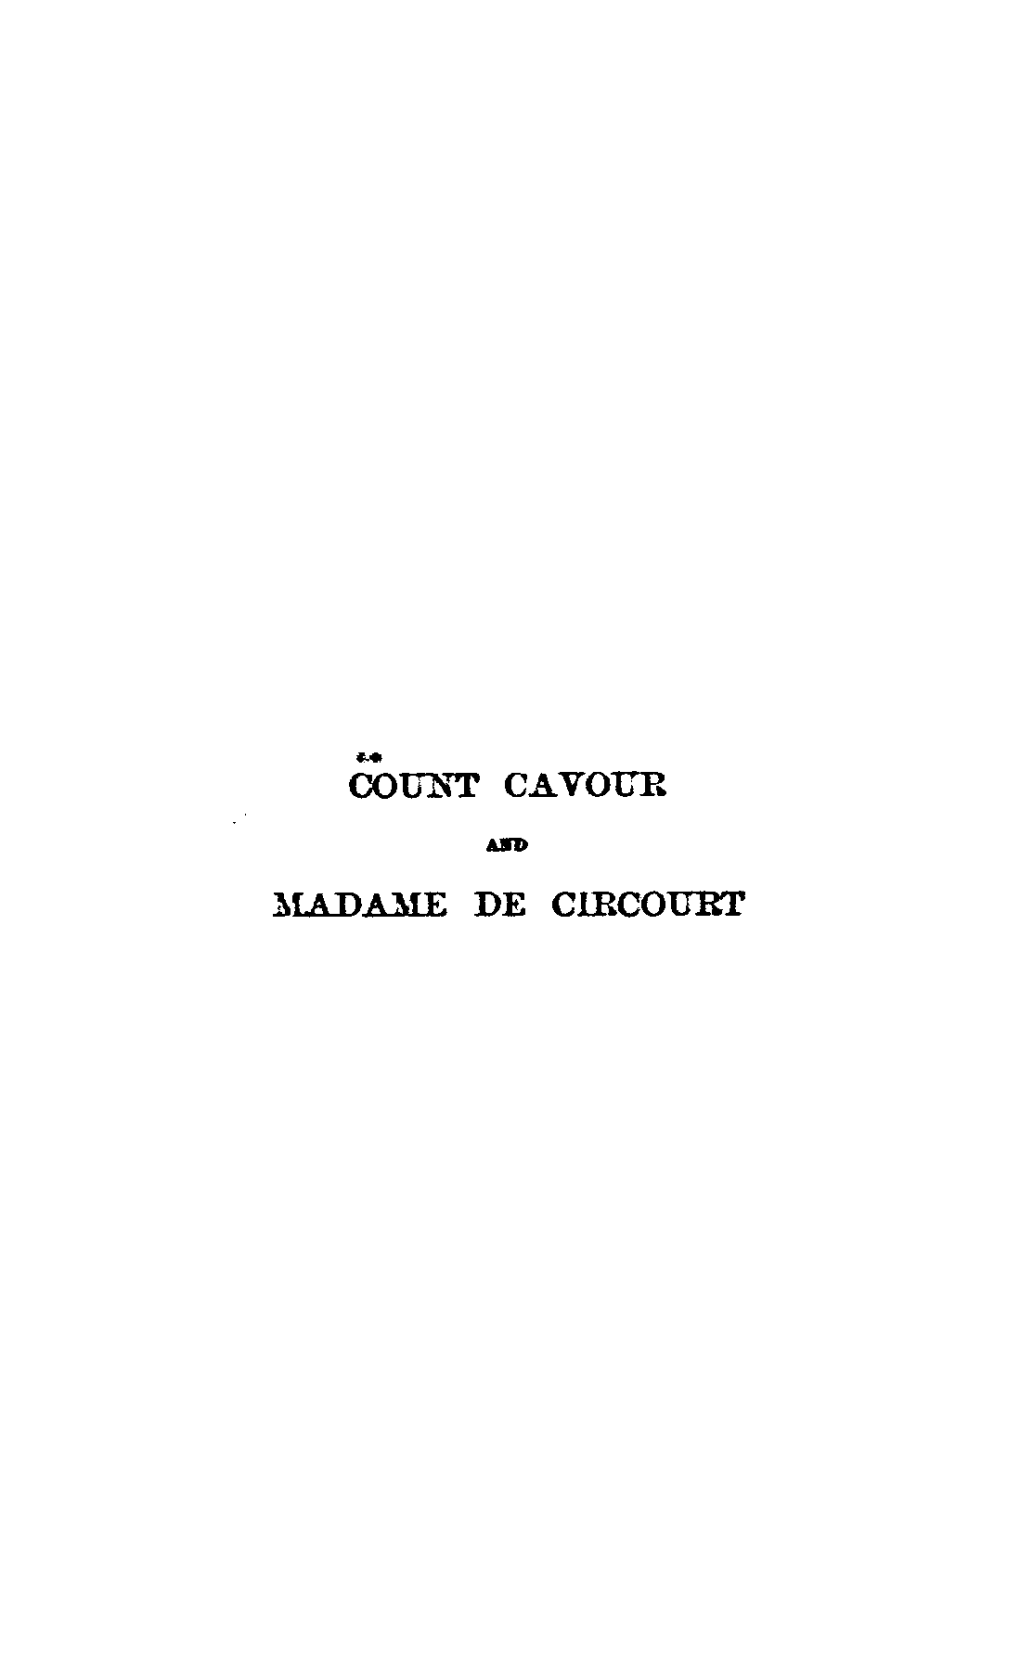 Coill\""T CAVOUR :MADAME DE Clrcourt